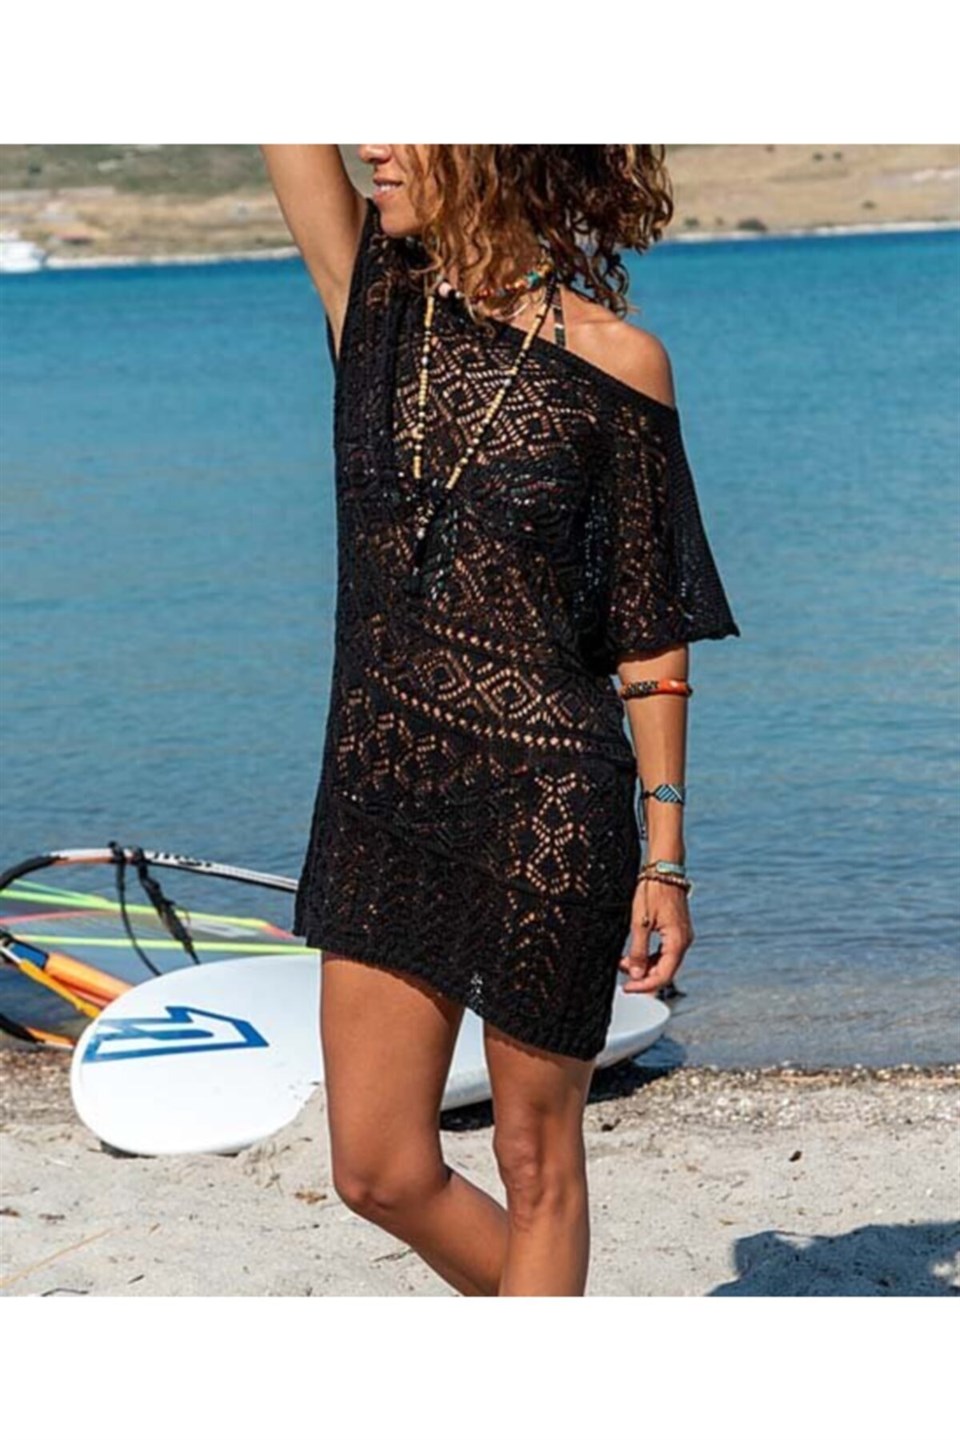 Kadın Tek Omzu Açık Dantel Örme Siyah Plaj Elbisesi | aqefashion.com